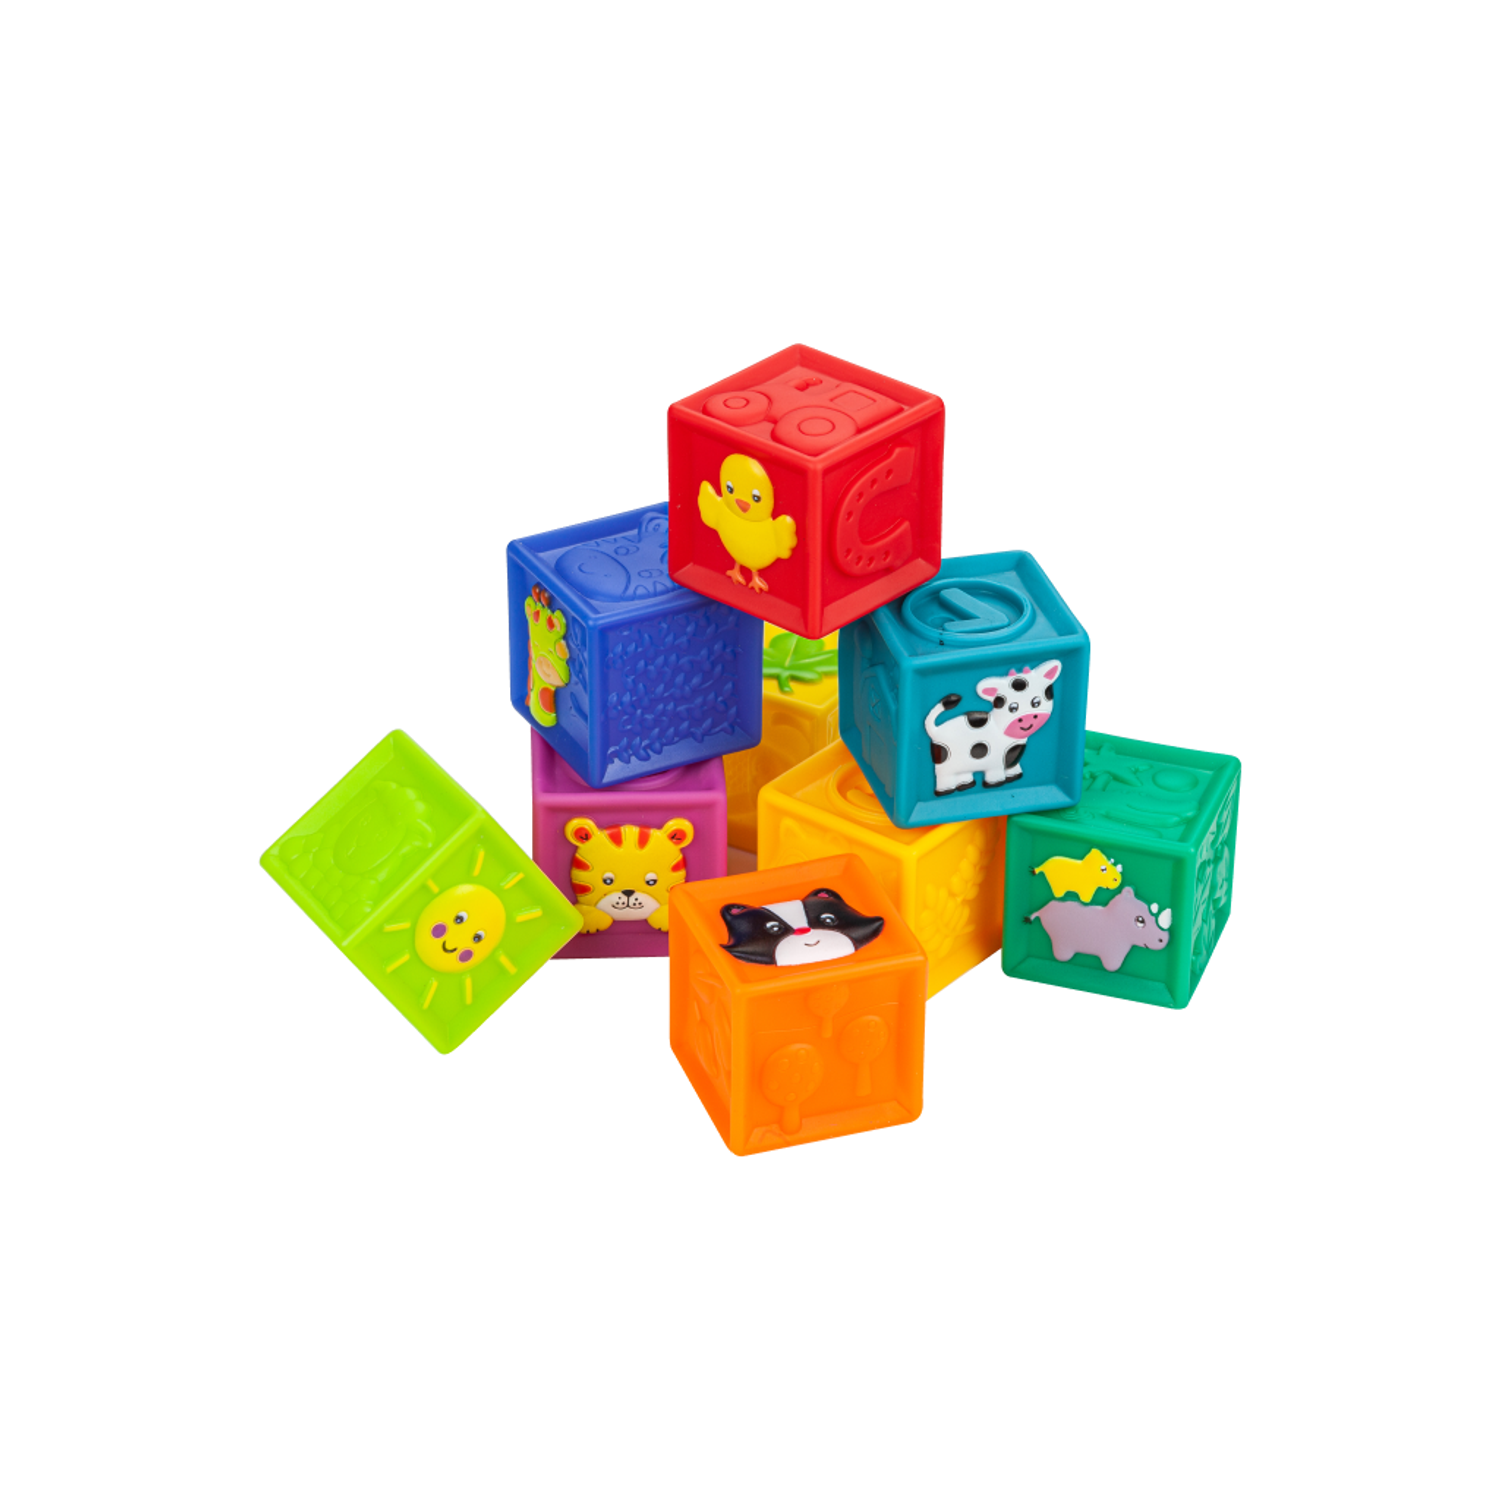 Развивающие мягкие кубики Solmax для детей 9 шт - фото 11